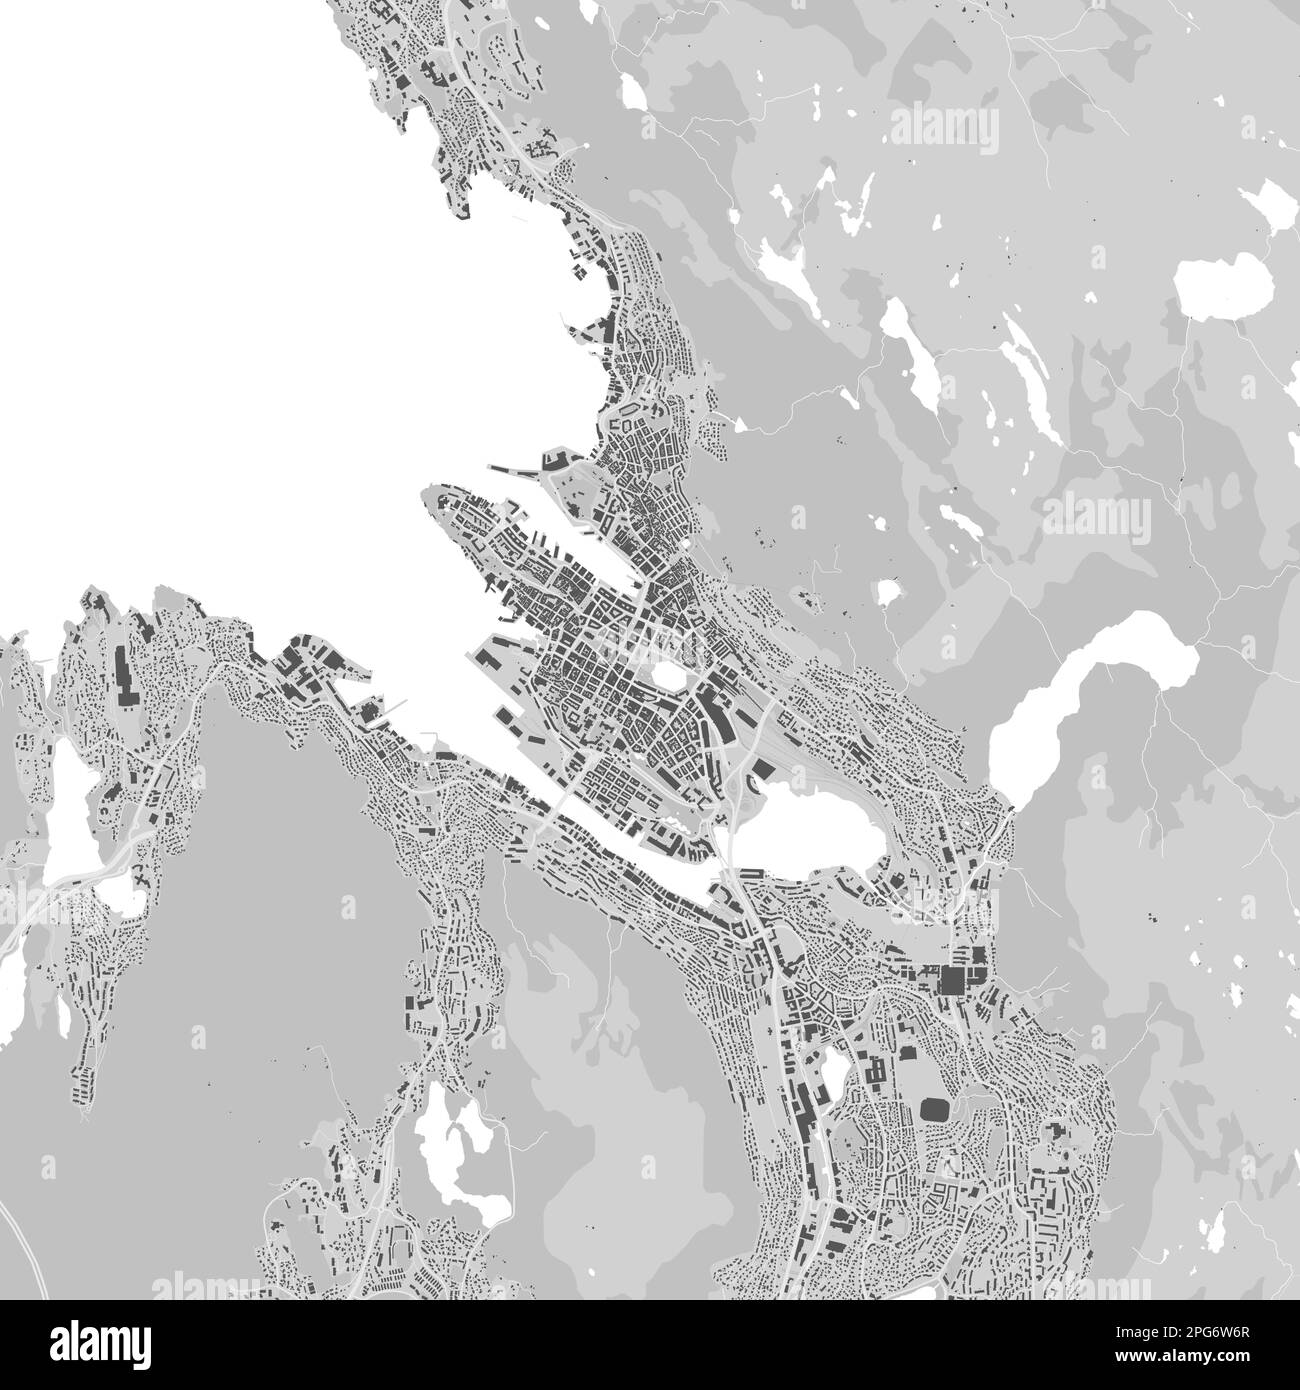 Ciudad urbana mapa vectorial de Bergen. Ilustración vectorial, mapa de Bergen cartel de arte en blanco y negro en escala de grises. imagen de mapa de carreteras con carreteras, ciudad metropolitana ar Ilustración del Vector